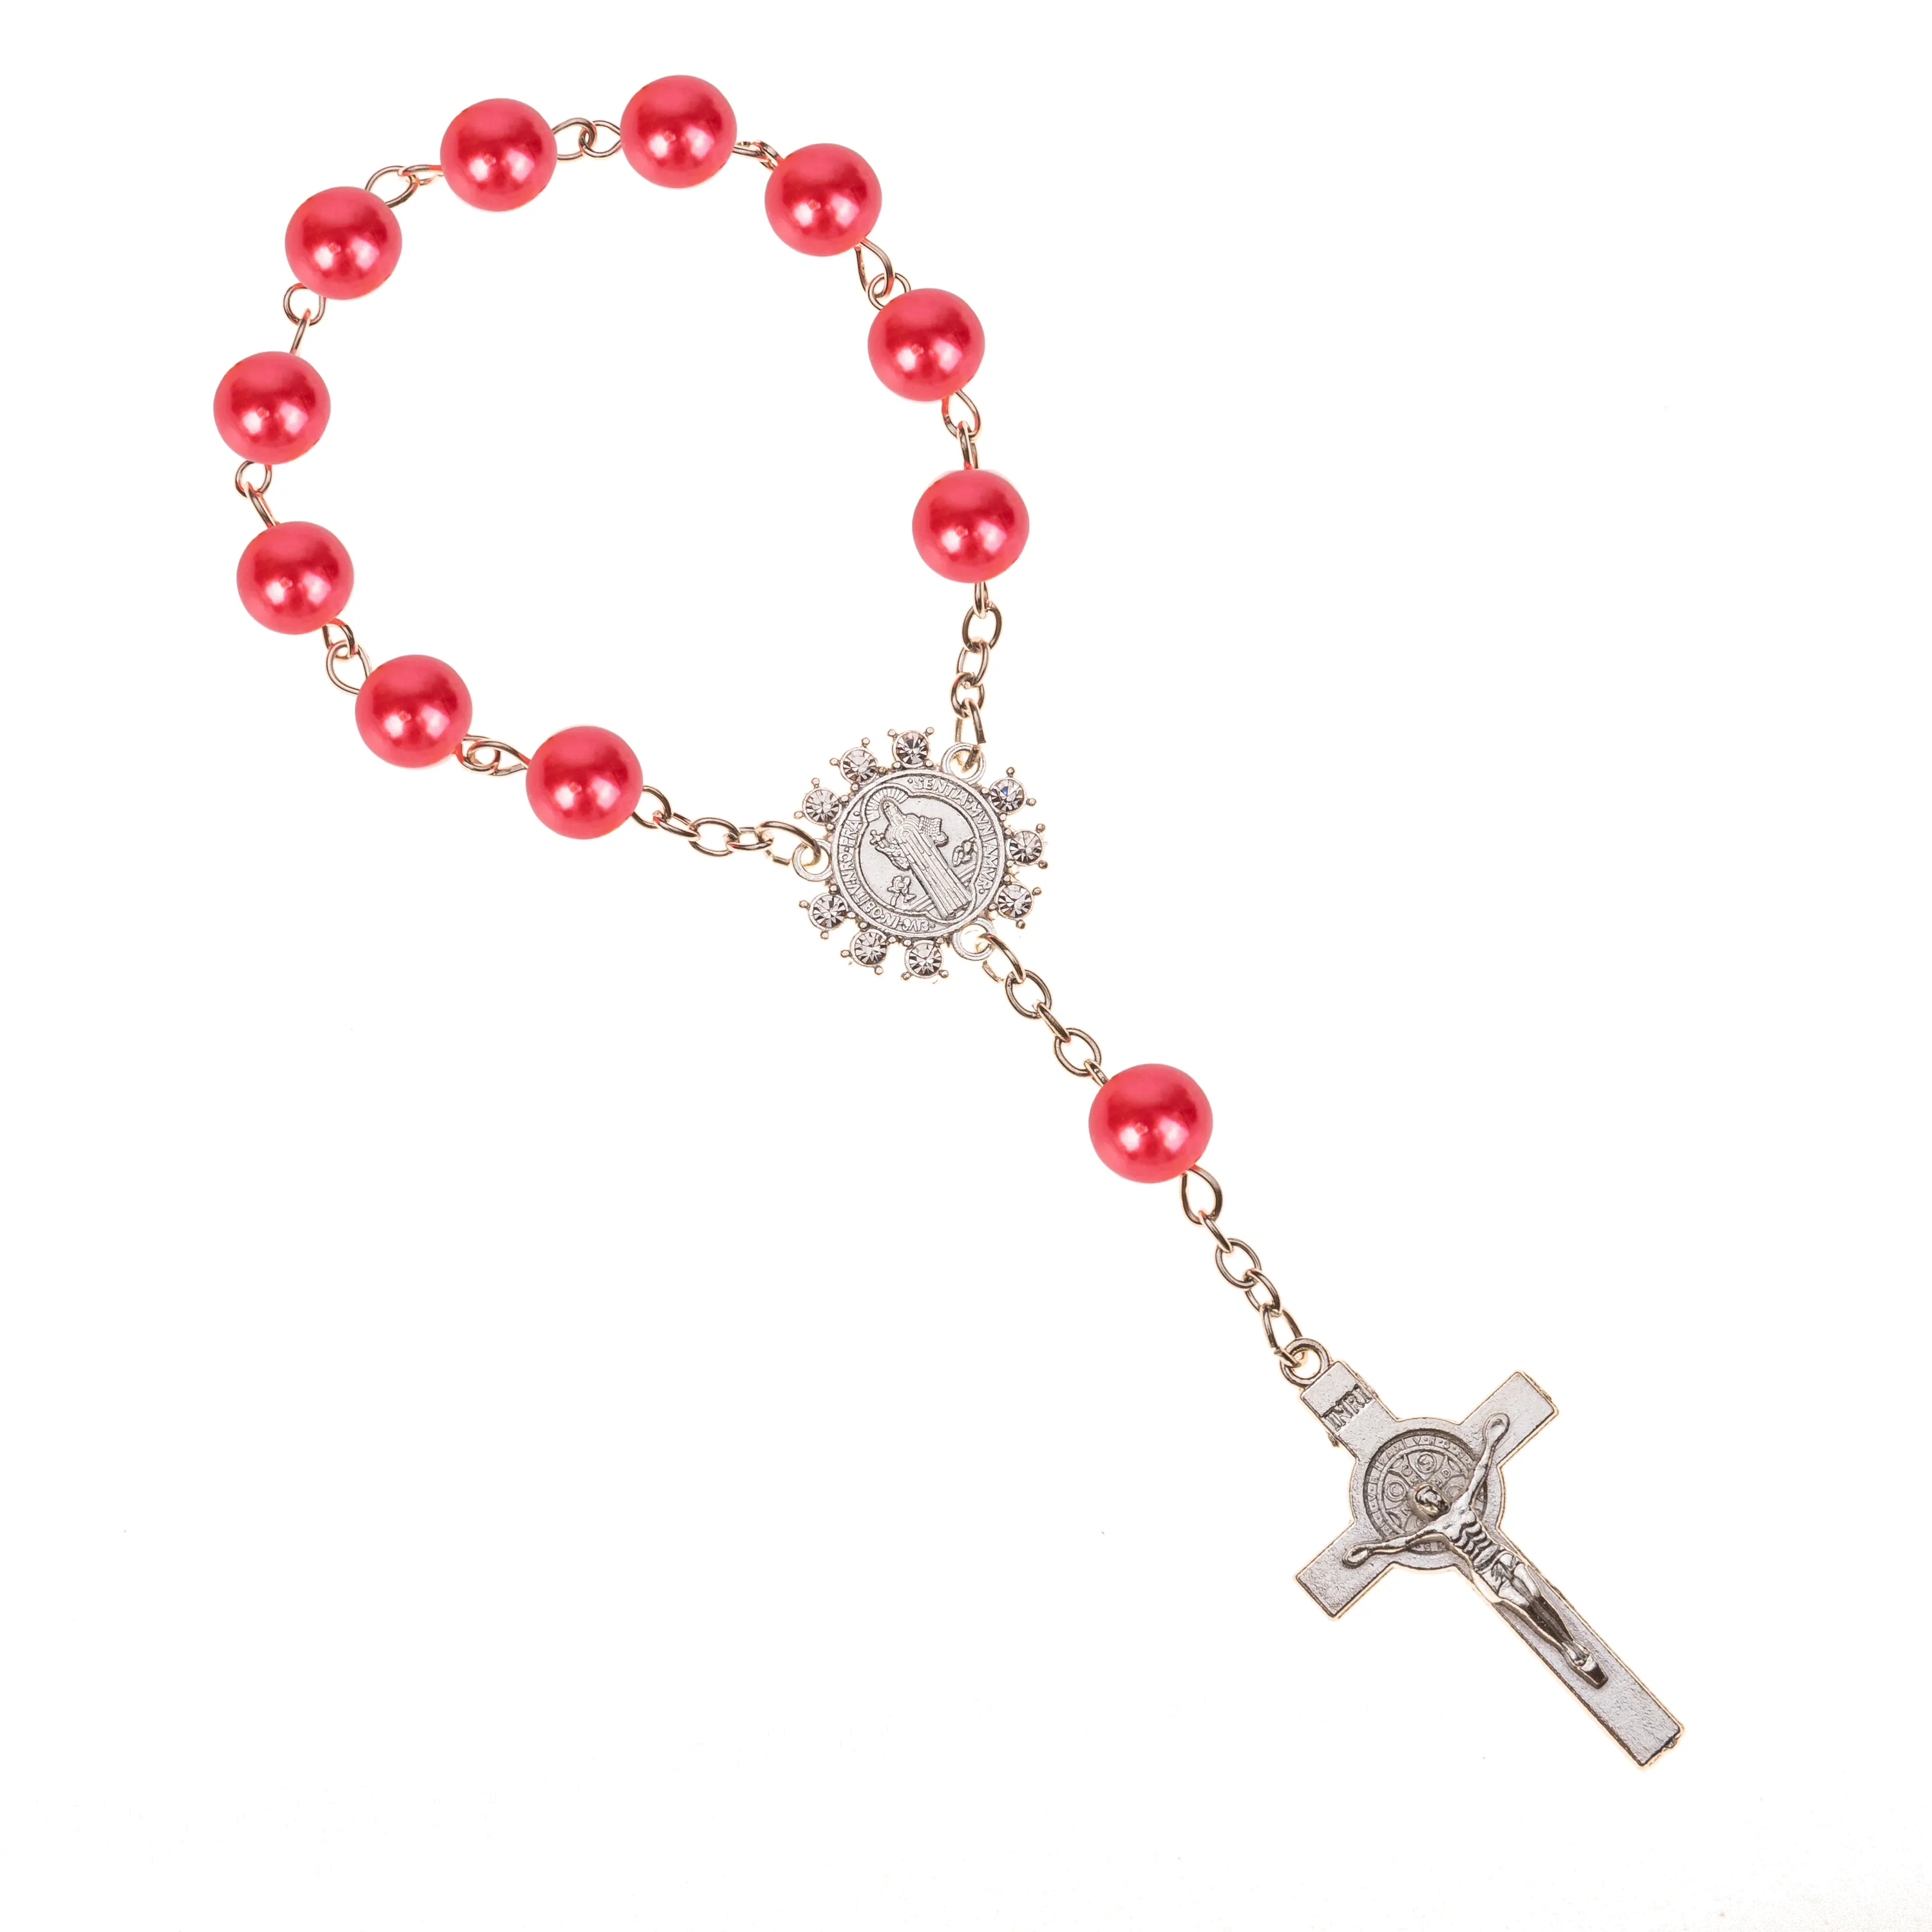 Nachahmung von Perlen, katholischer Rosenkranz, katholische Heilige Kommunion, silberne Farbe, Flügel, Kruzifix-Anhänger, Armband, schönes Geschenk